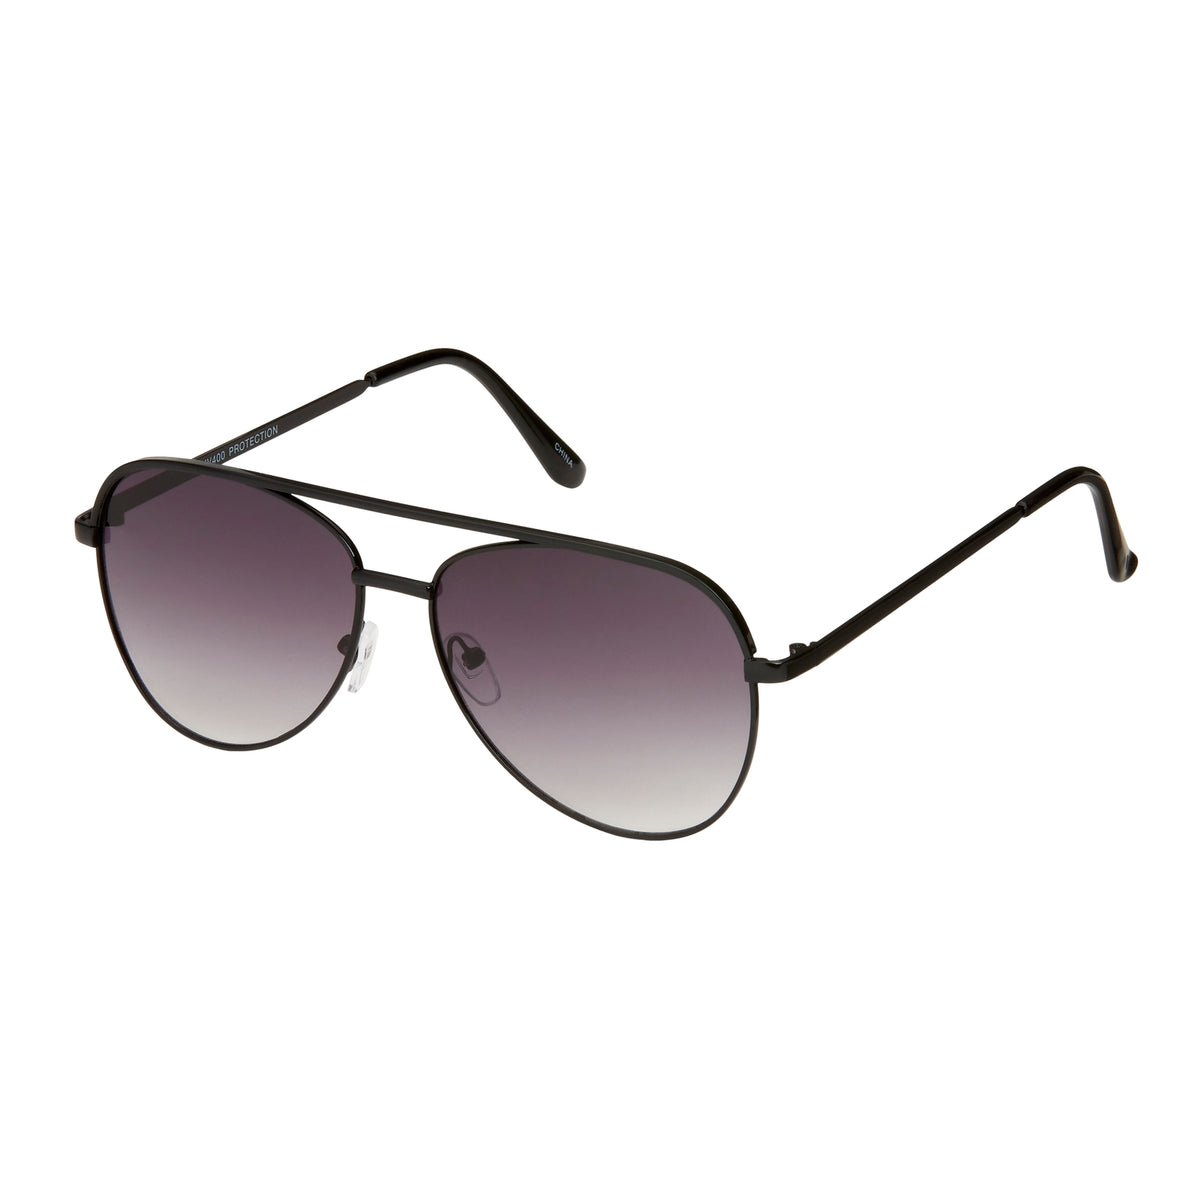 Blu Gem Sunglasses - Jade Aviator